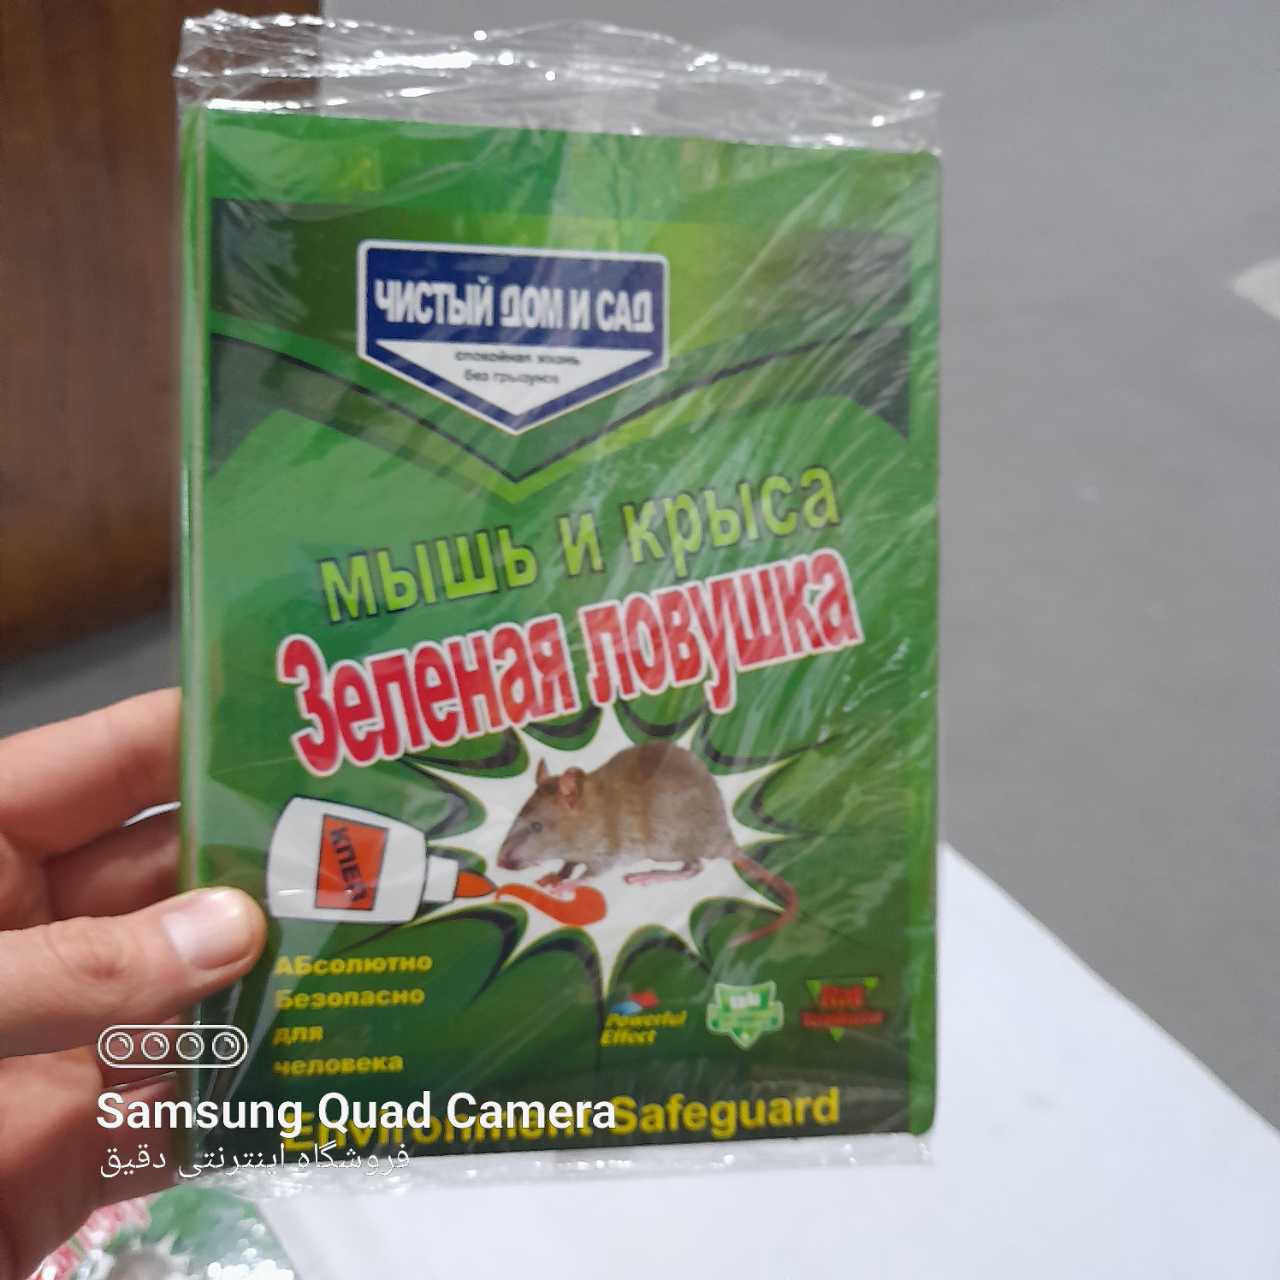   خرید لوازم خرازی - چسب حشرات خانگی و موش قیمت استثنایی کارخانه تولیدی -   